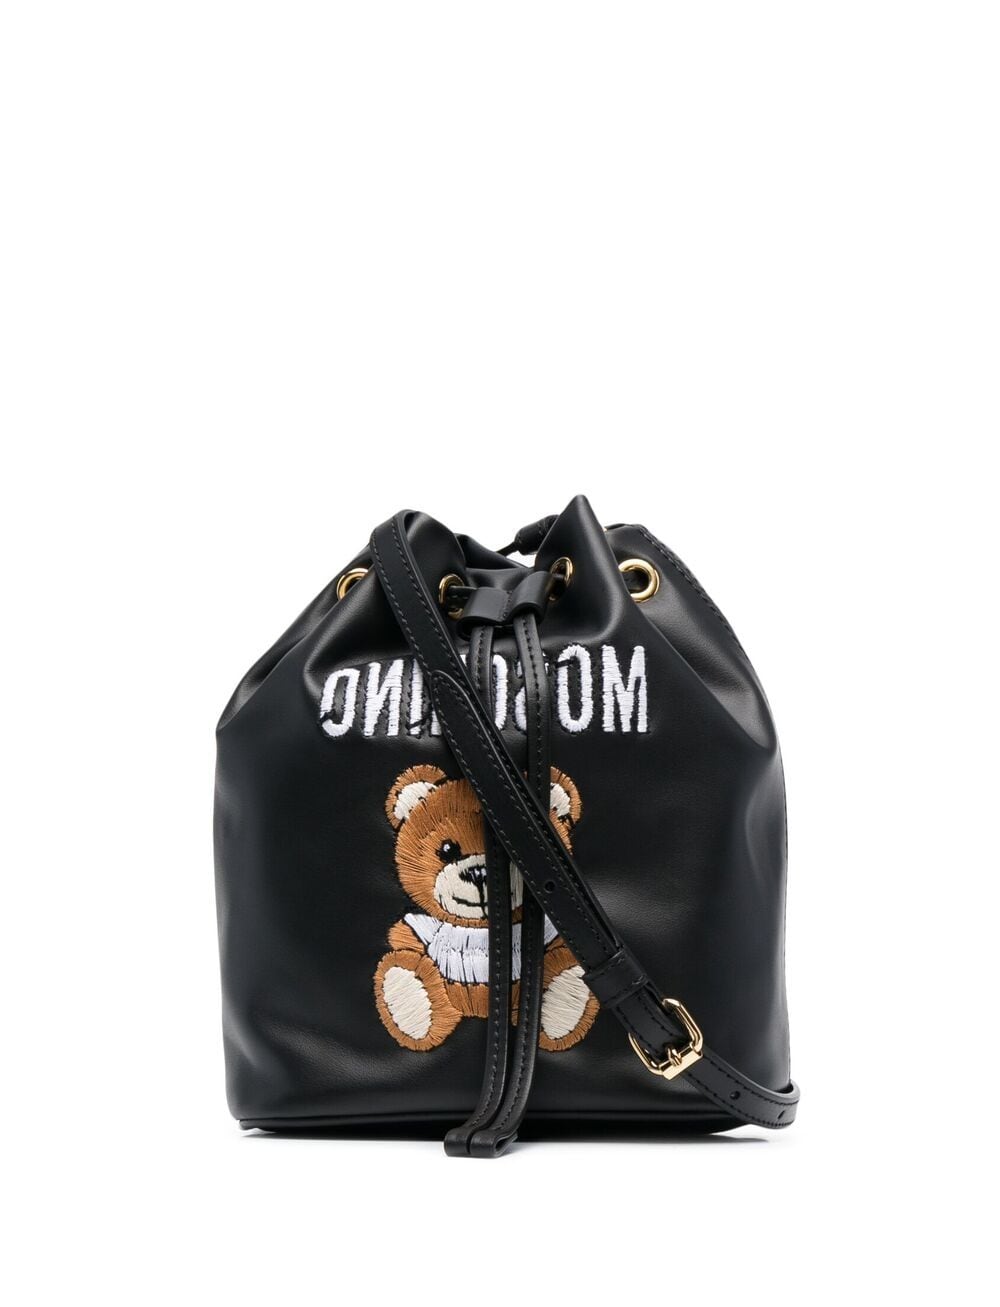 фото Moschino сумка-ведро с вышивкой teddy bear